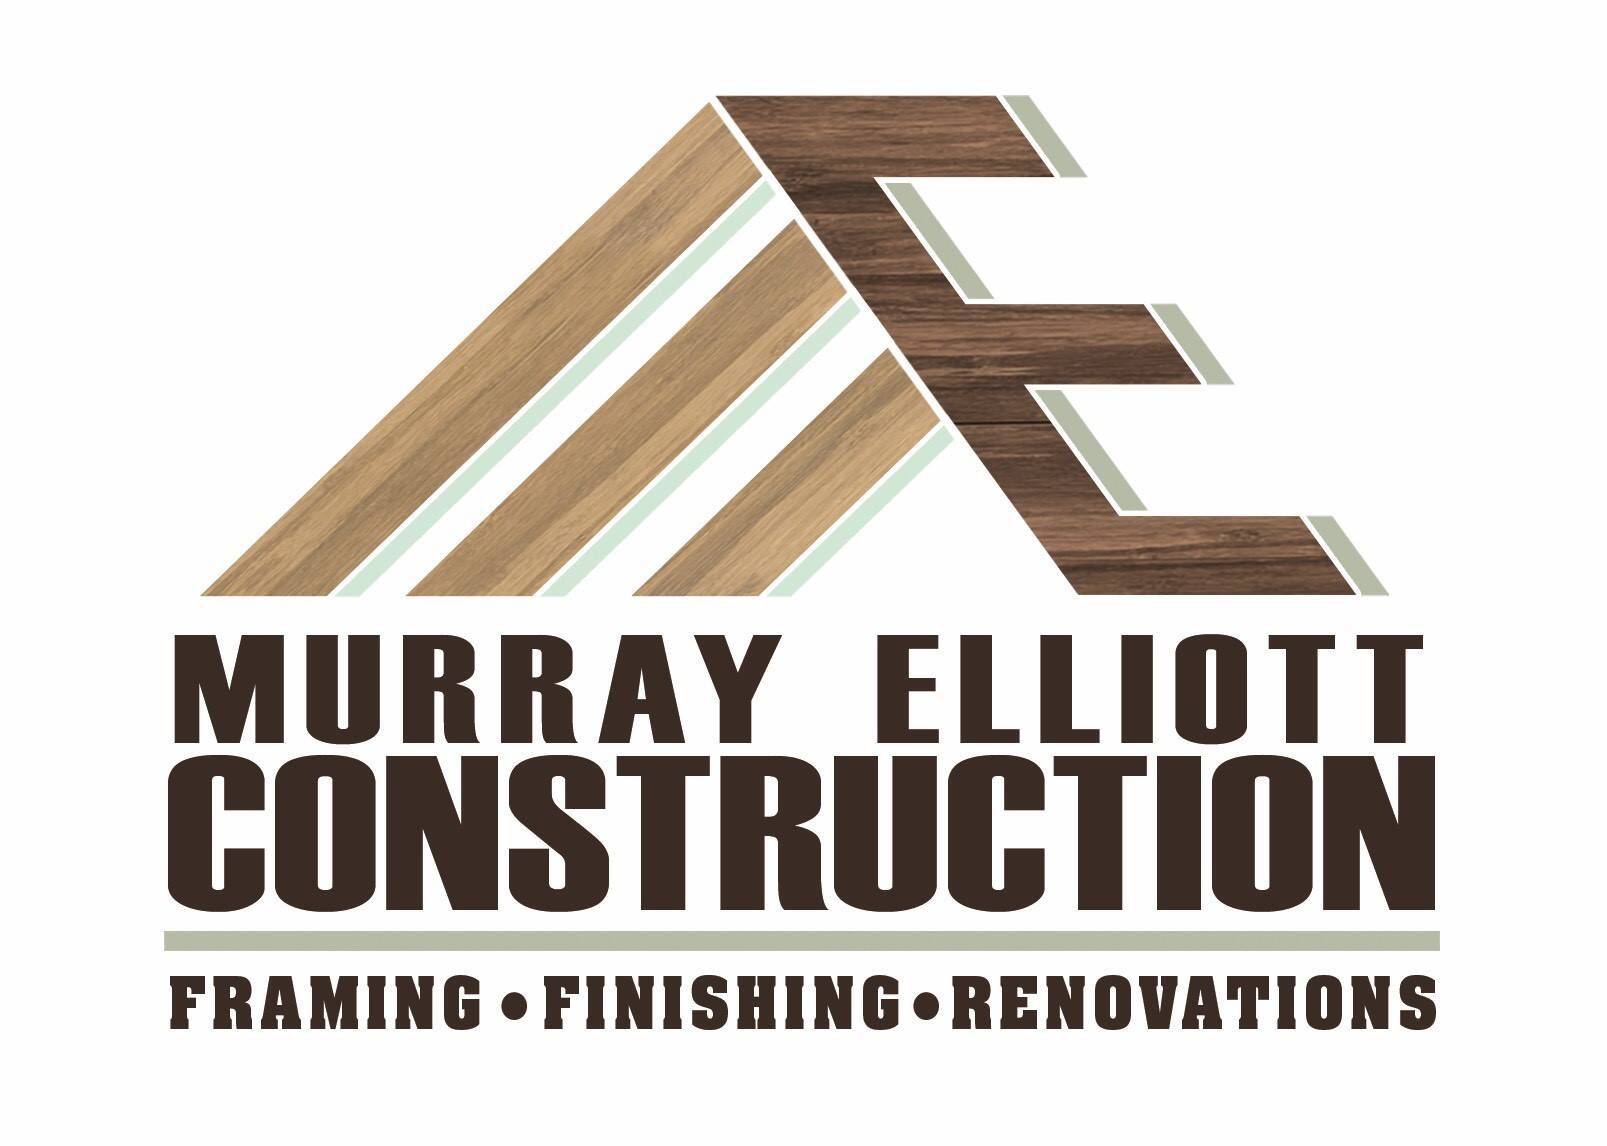 Murray Elliott Construction